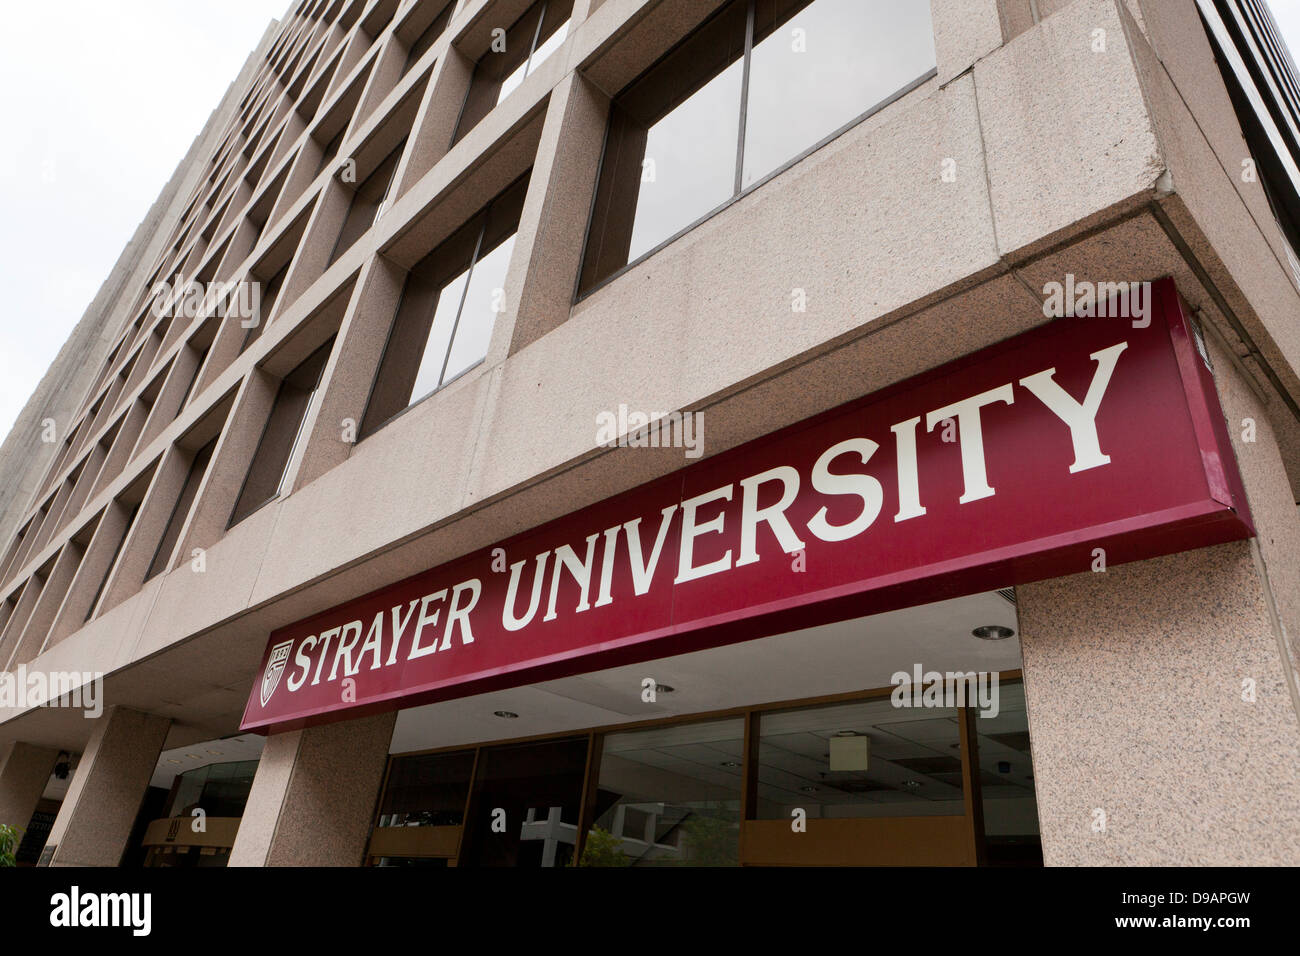 Strayer University building sign, Washington DC Stock Photo